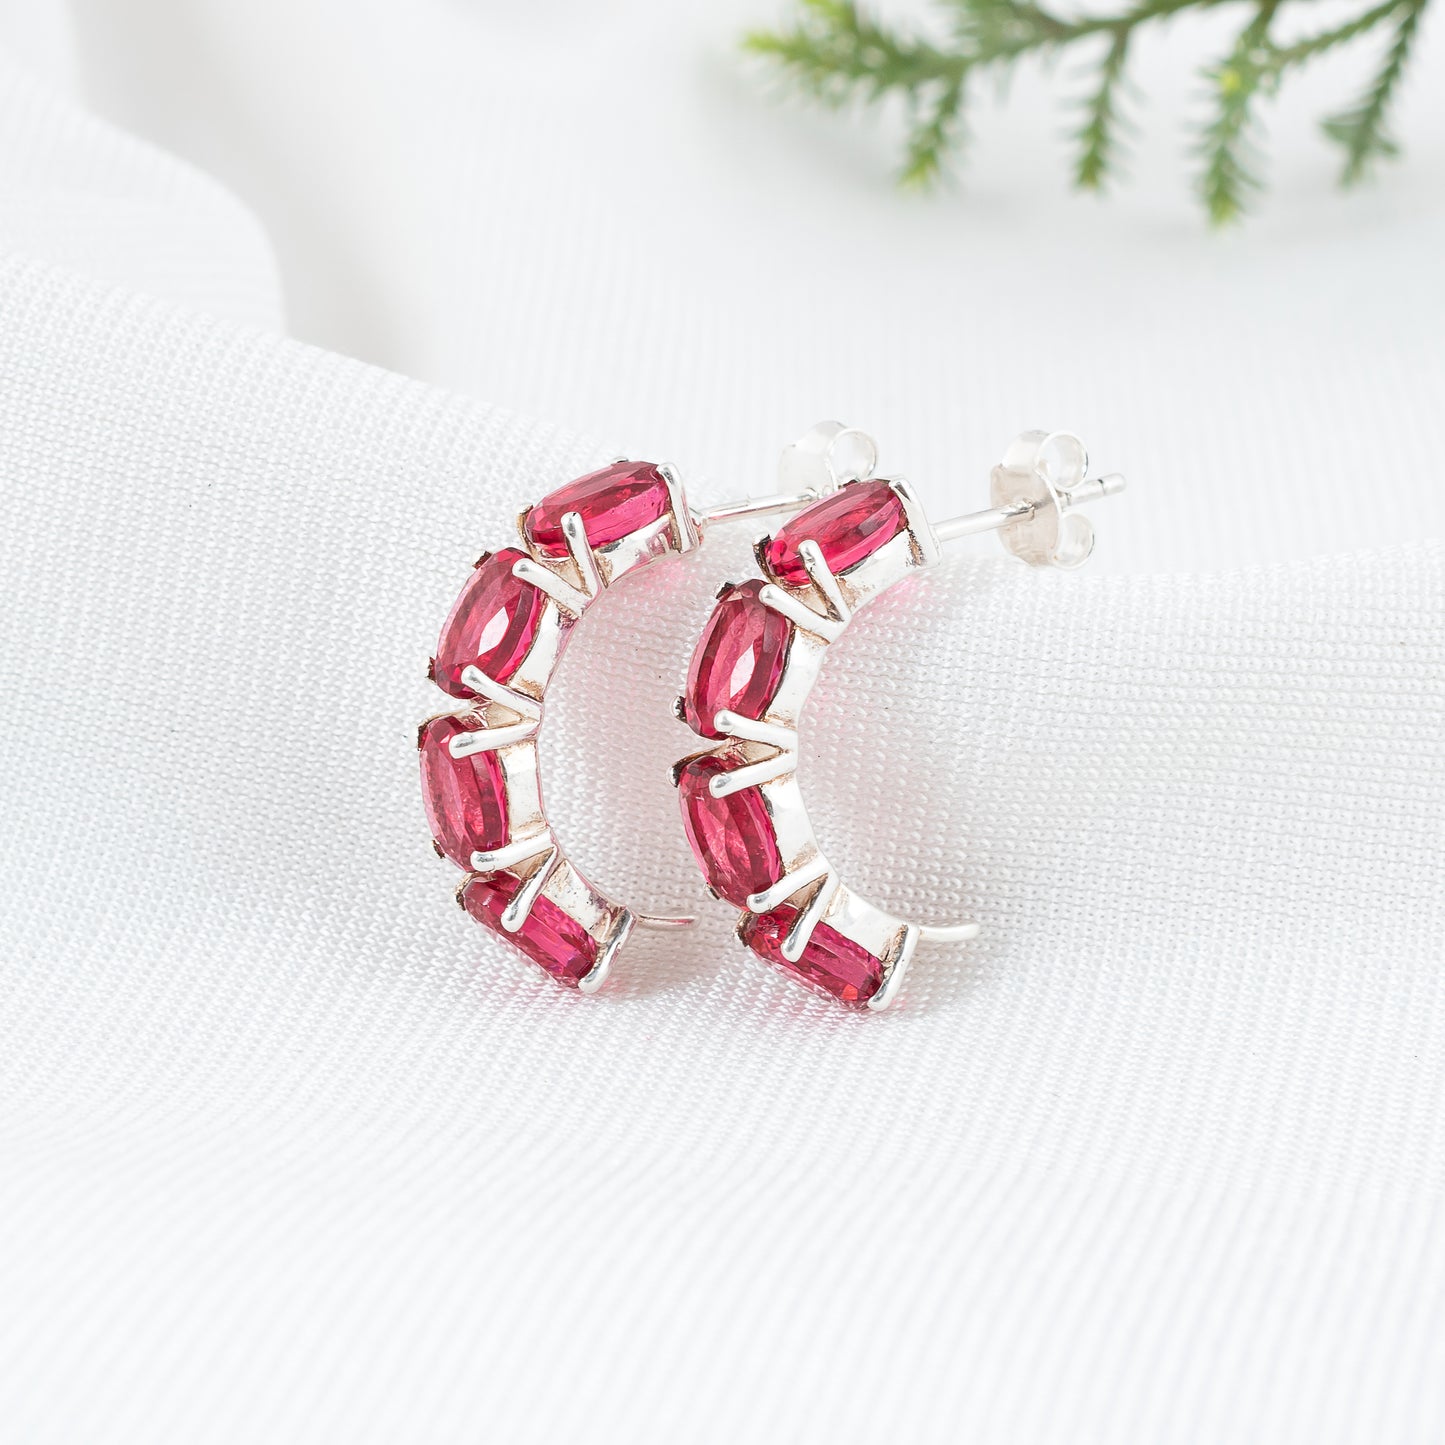 925 Sterling Silver Earring with Pink Tourmaline Gemstone | Elegant Semi Circle Hoop Stud Earring